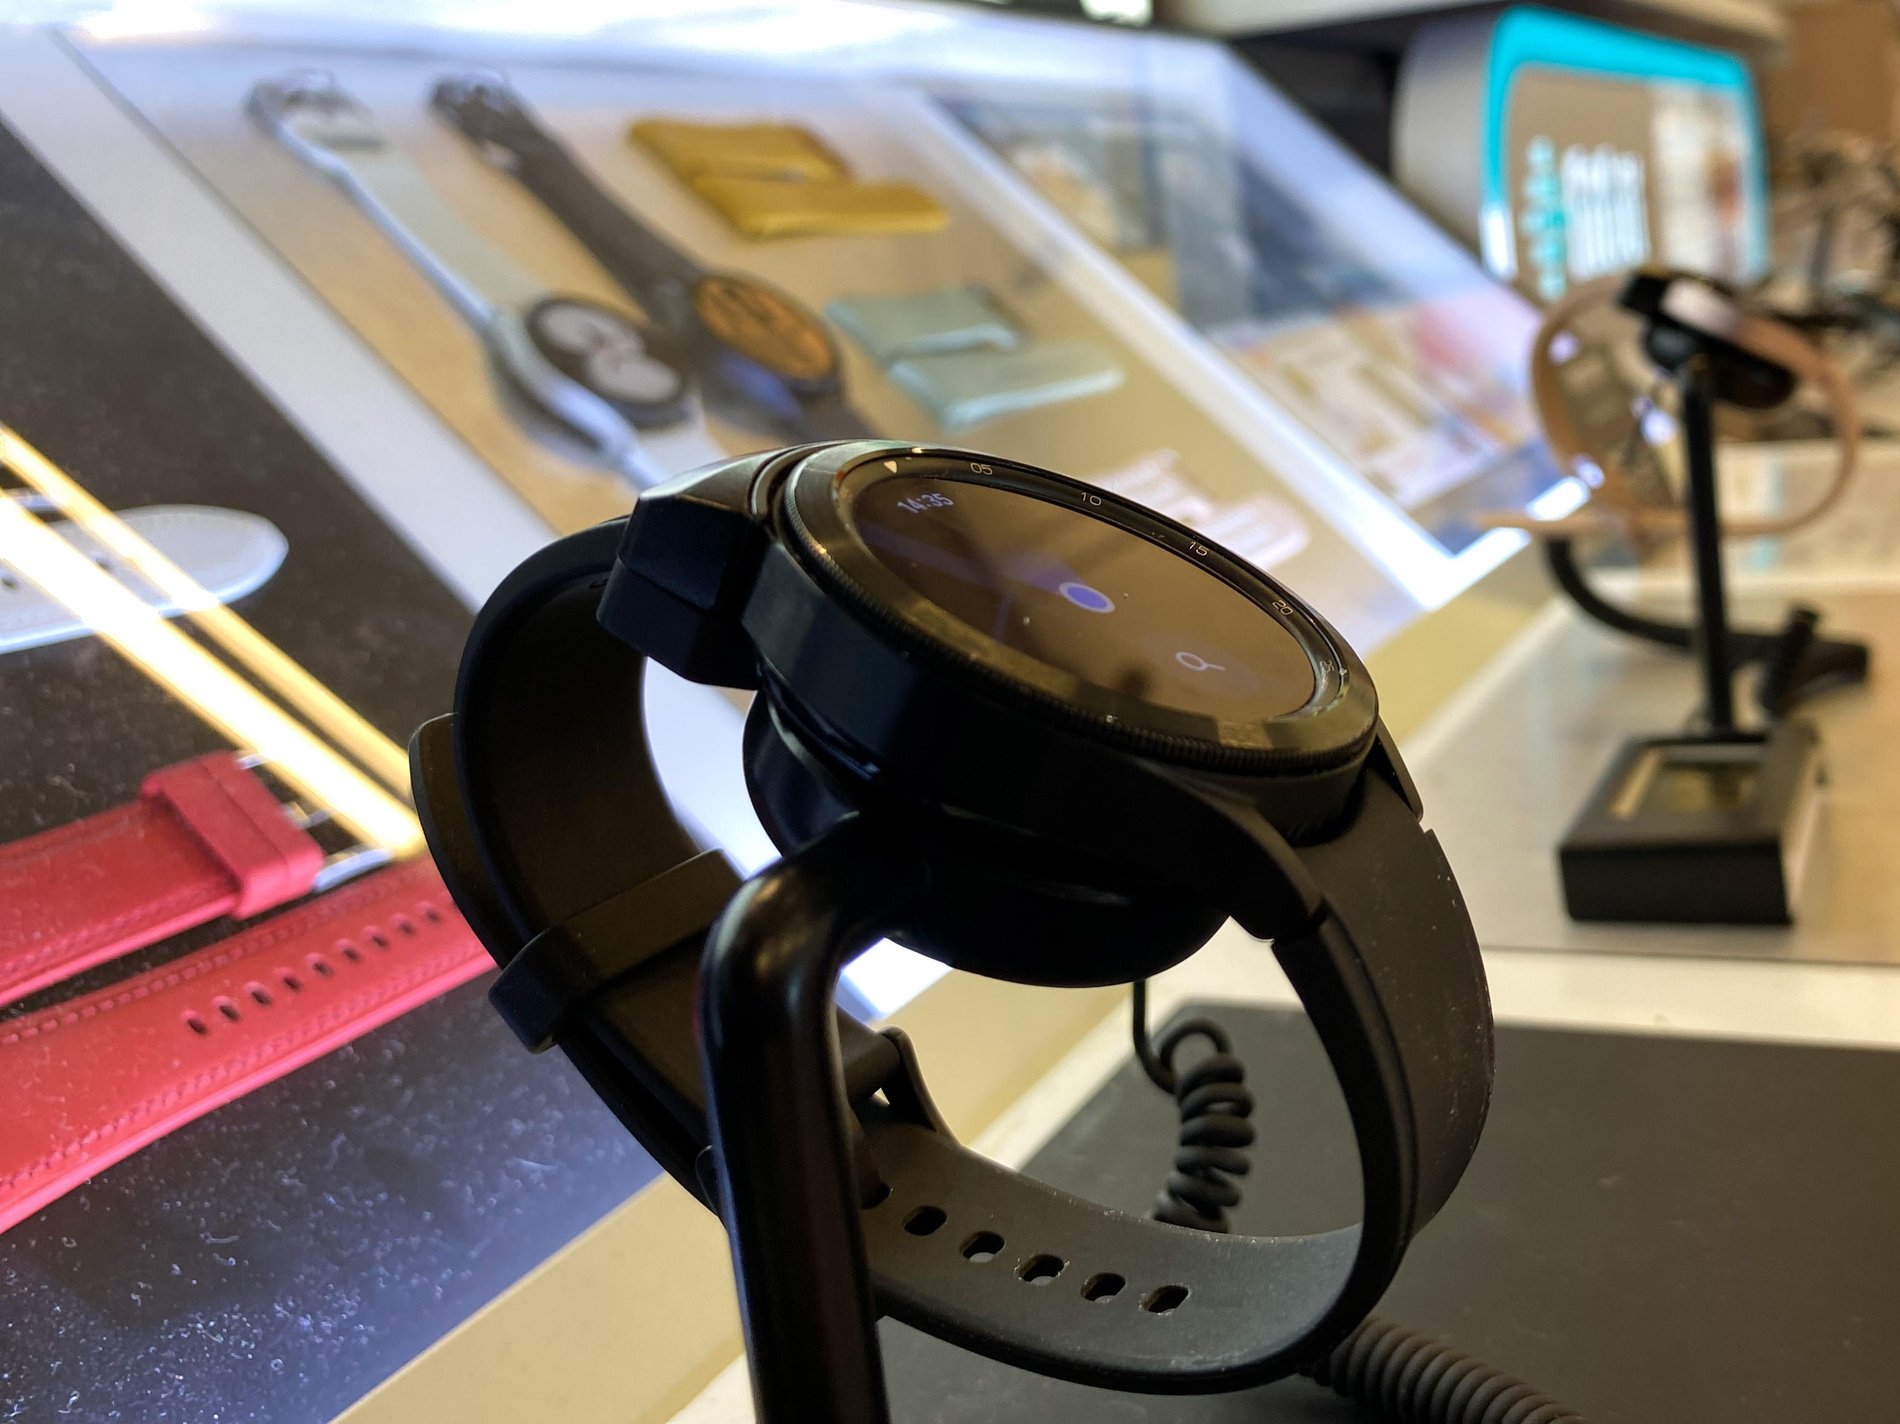 Découvrez les montres connectées dans votre magasin Boulanger Melun Cesson avec Apple watch et galaxy watch.